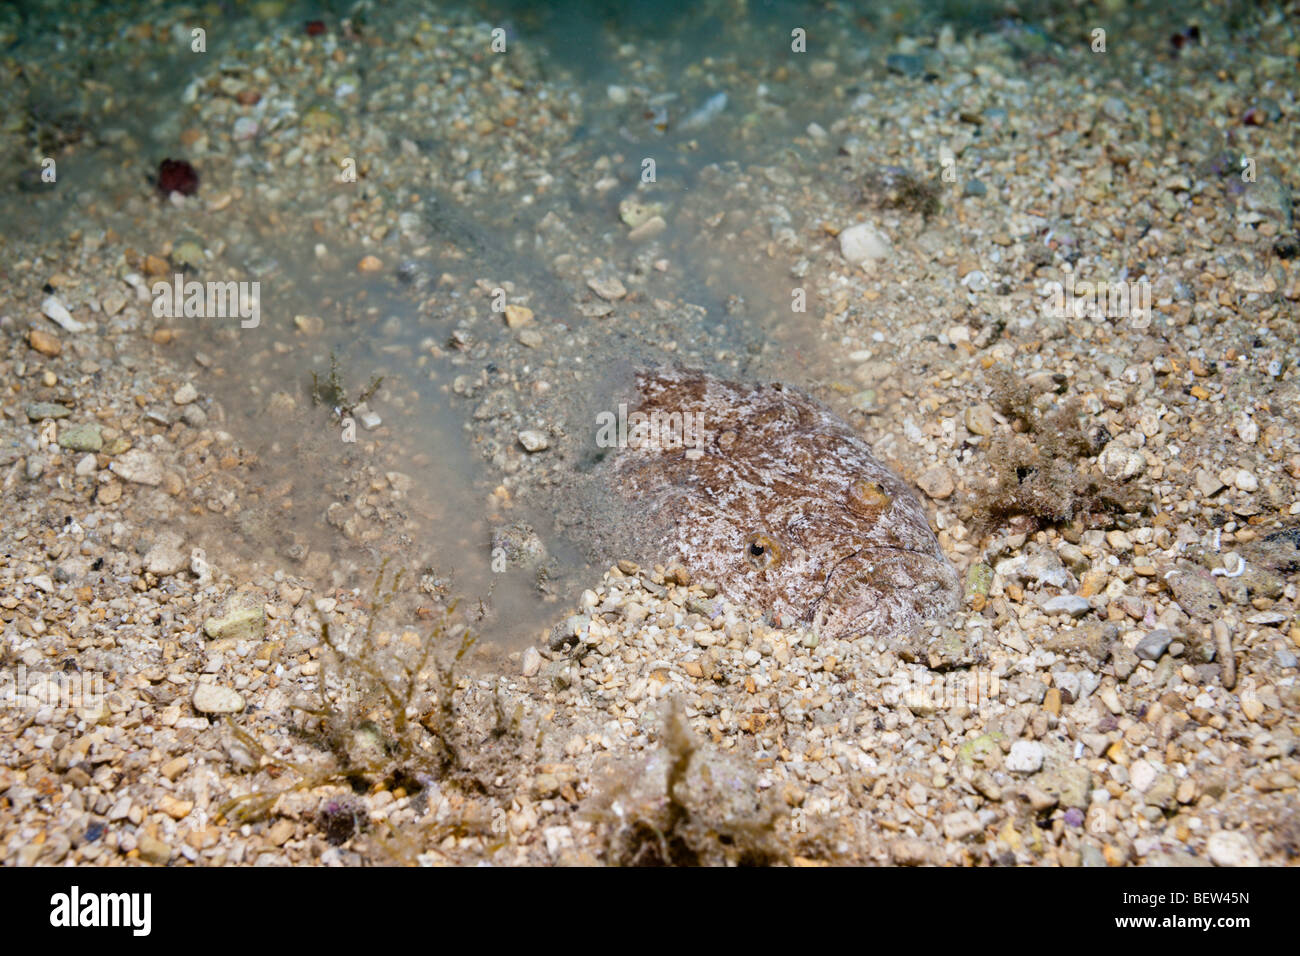 Star Gazer nasconde nella sabbia, Uranoscopus scaber, Istria, Mare Adriatico, Croazia Foto Stock